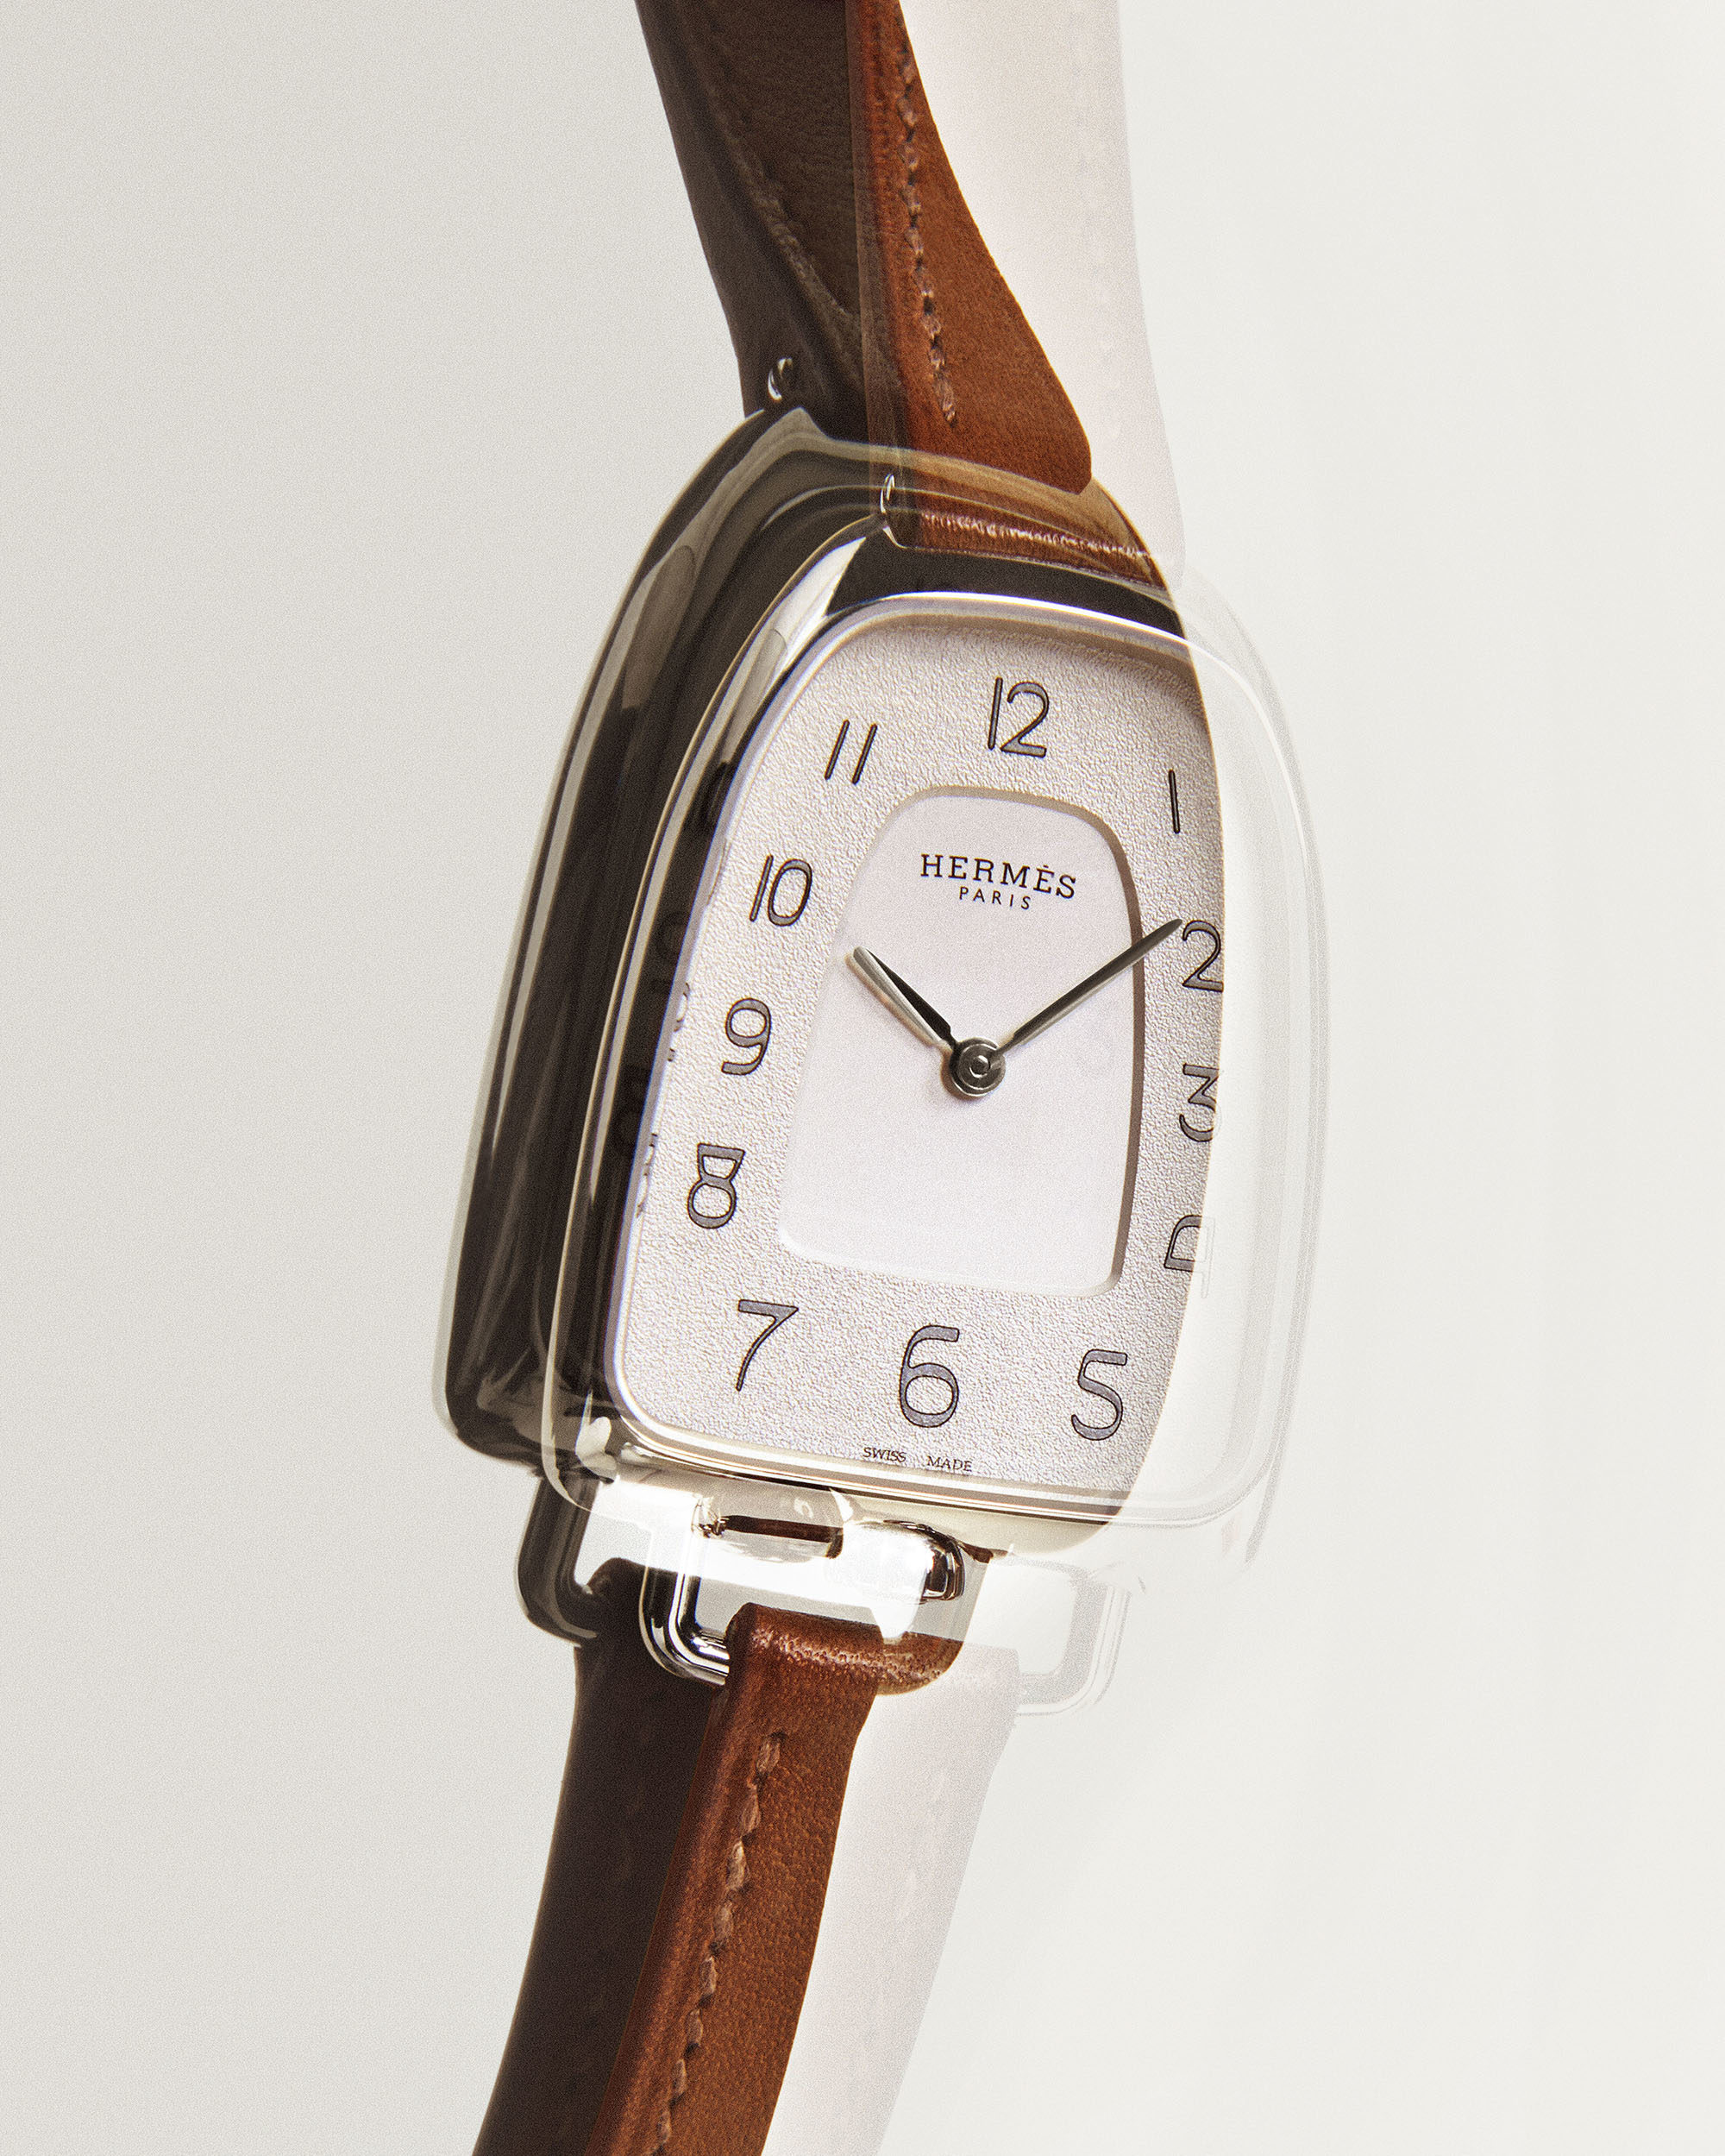 The Galop d'Hermès Watch | Hermès